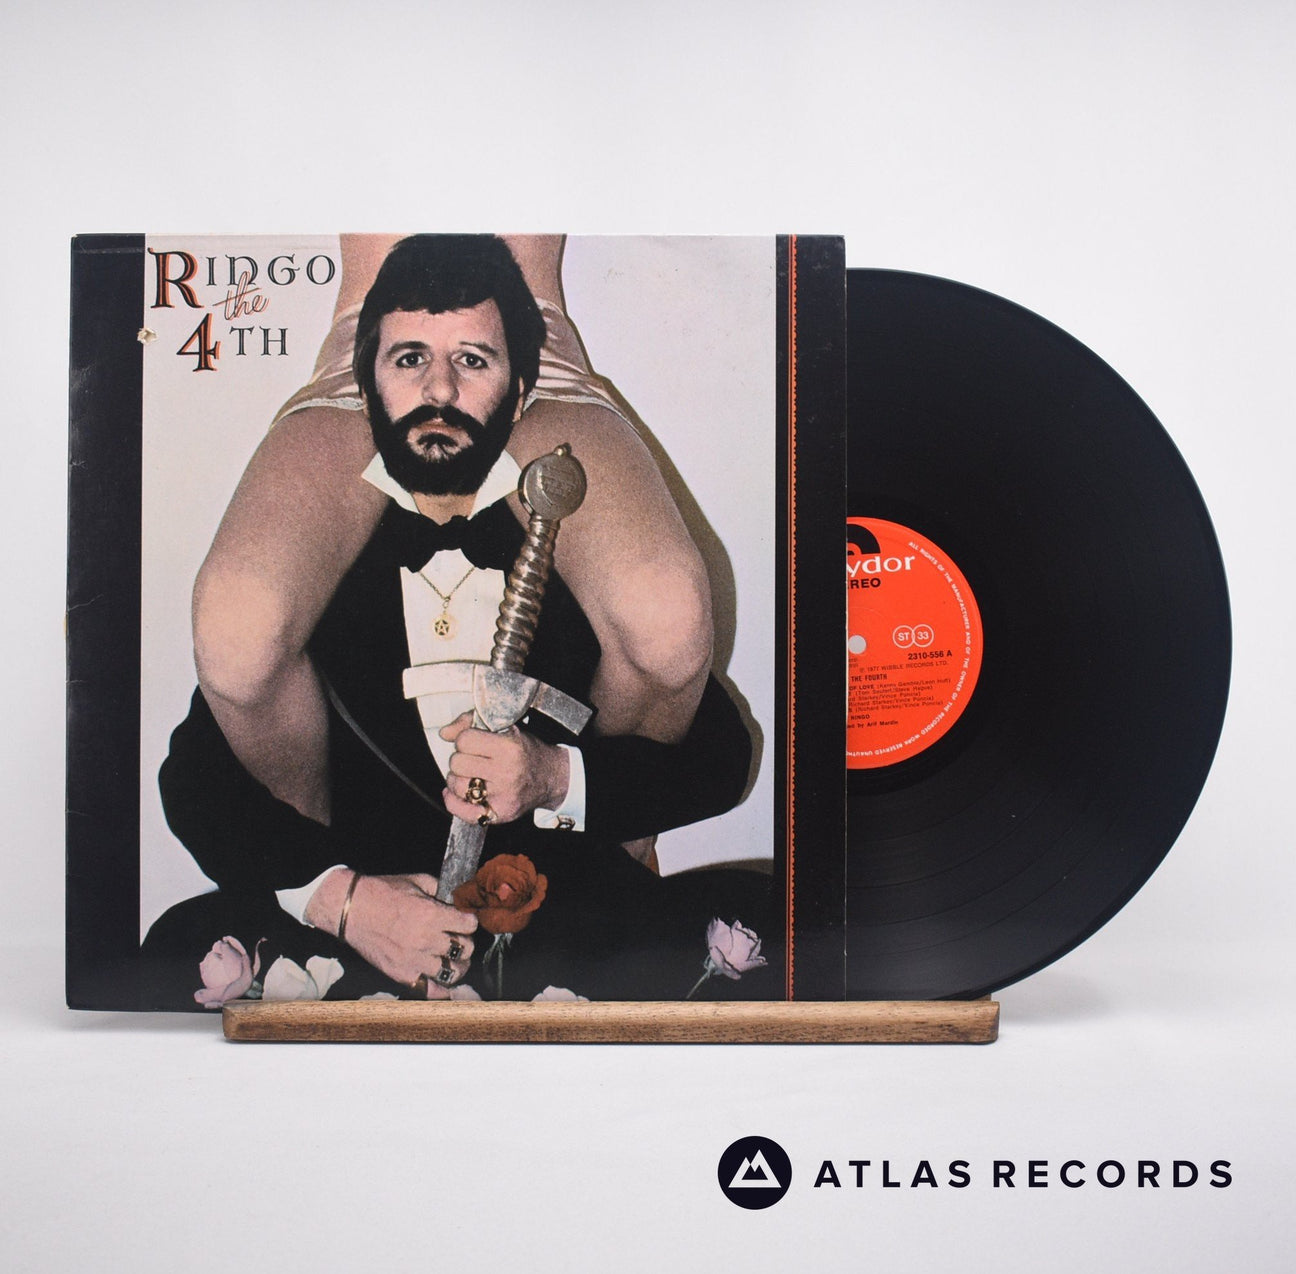 Ringo Starr Ringo The 4th LP Vinyl Record - Front Cover & Record